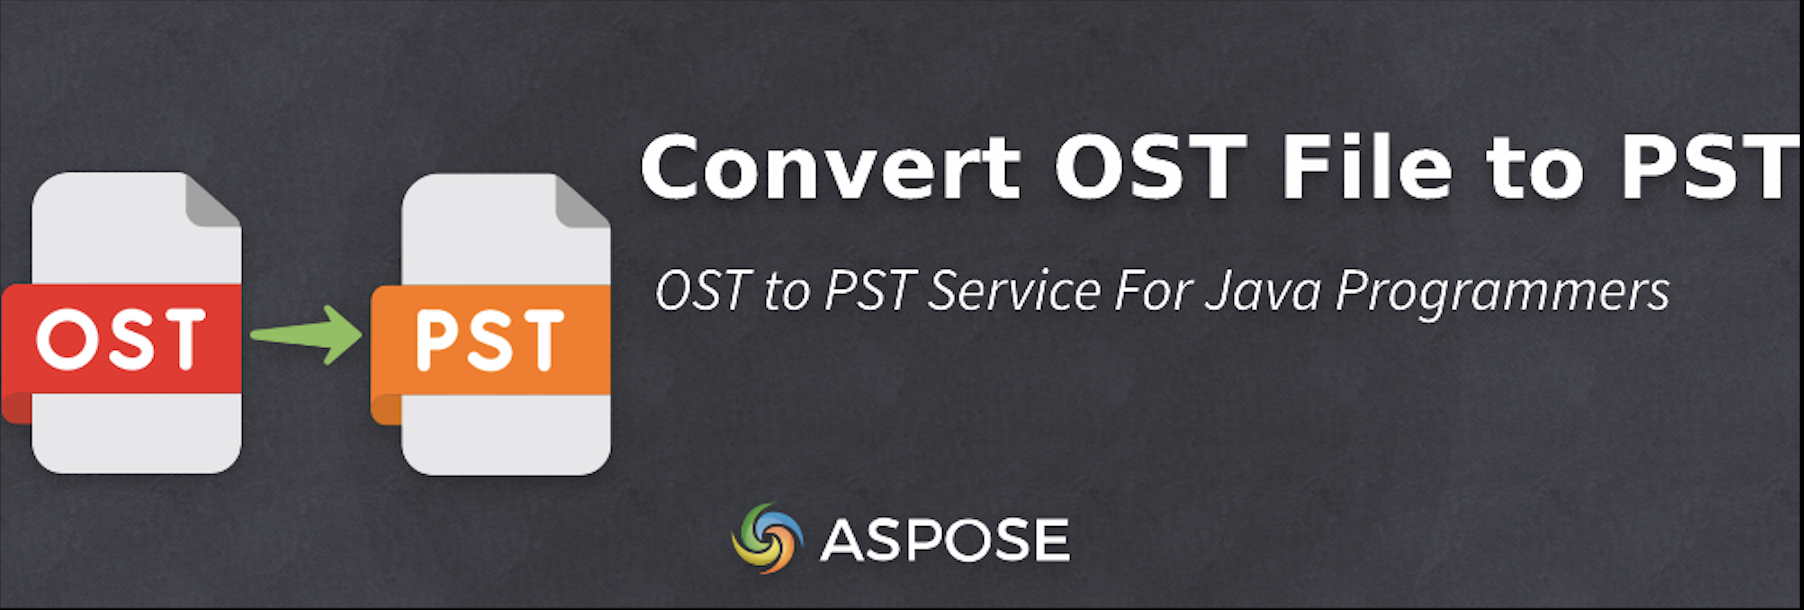 تبدیل فایل های OST به PST در Java - تبدیل رایگان OST به PST